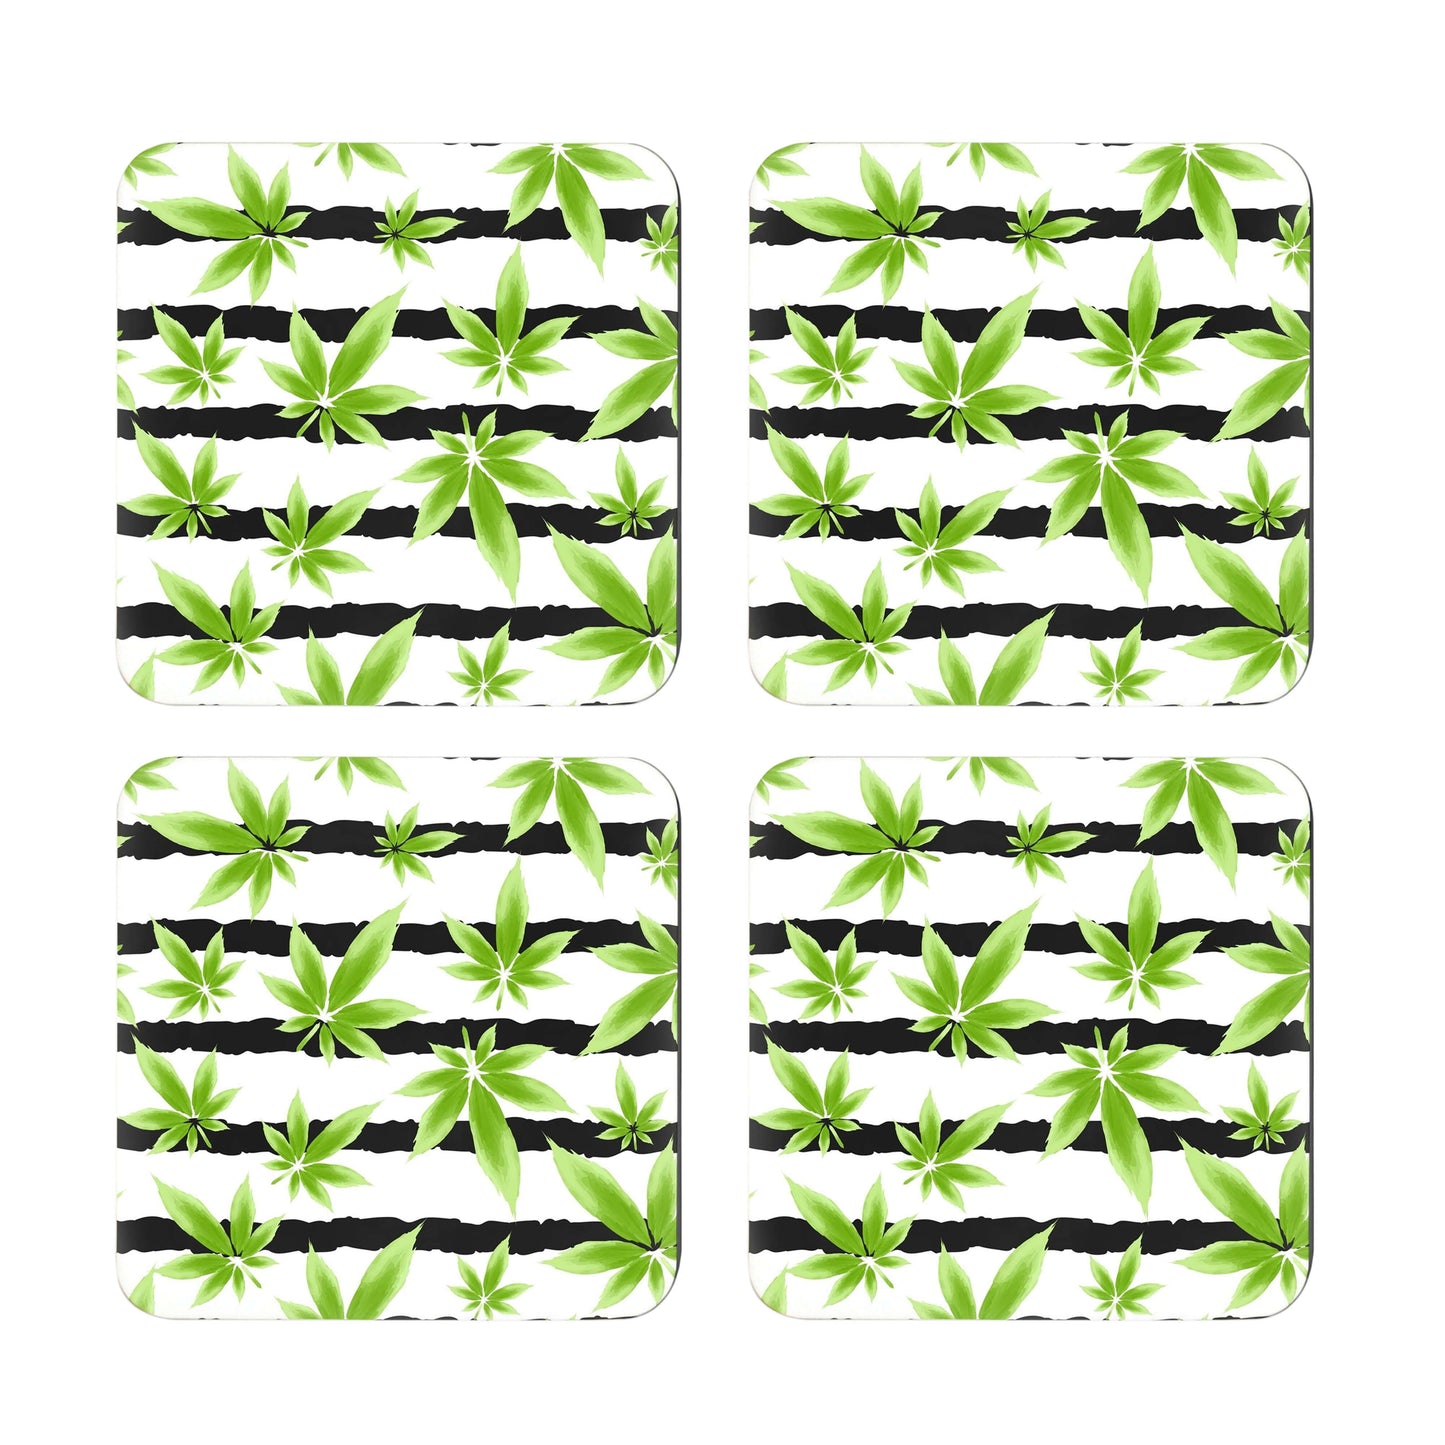 Marijuana leaf print coaster set of 4.